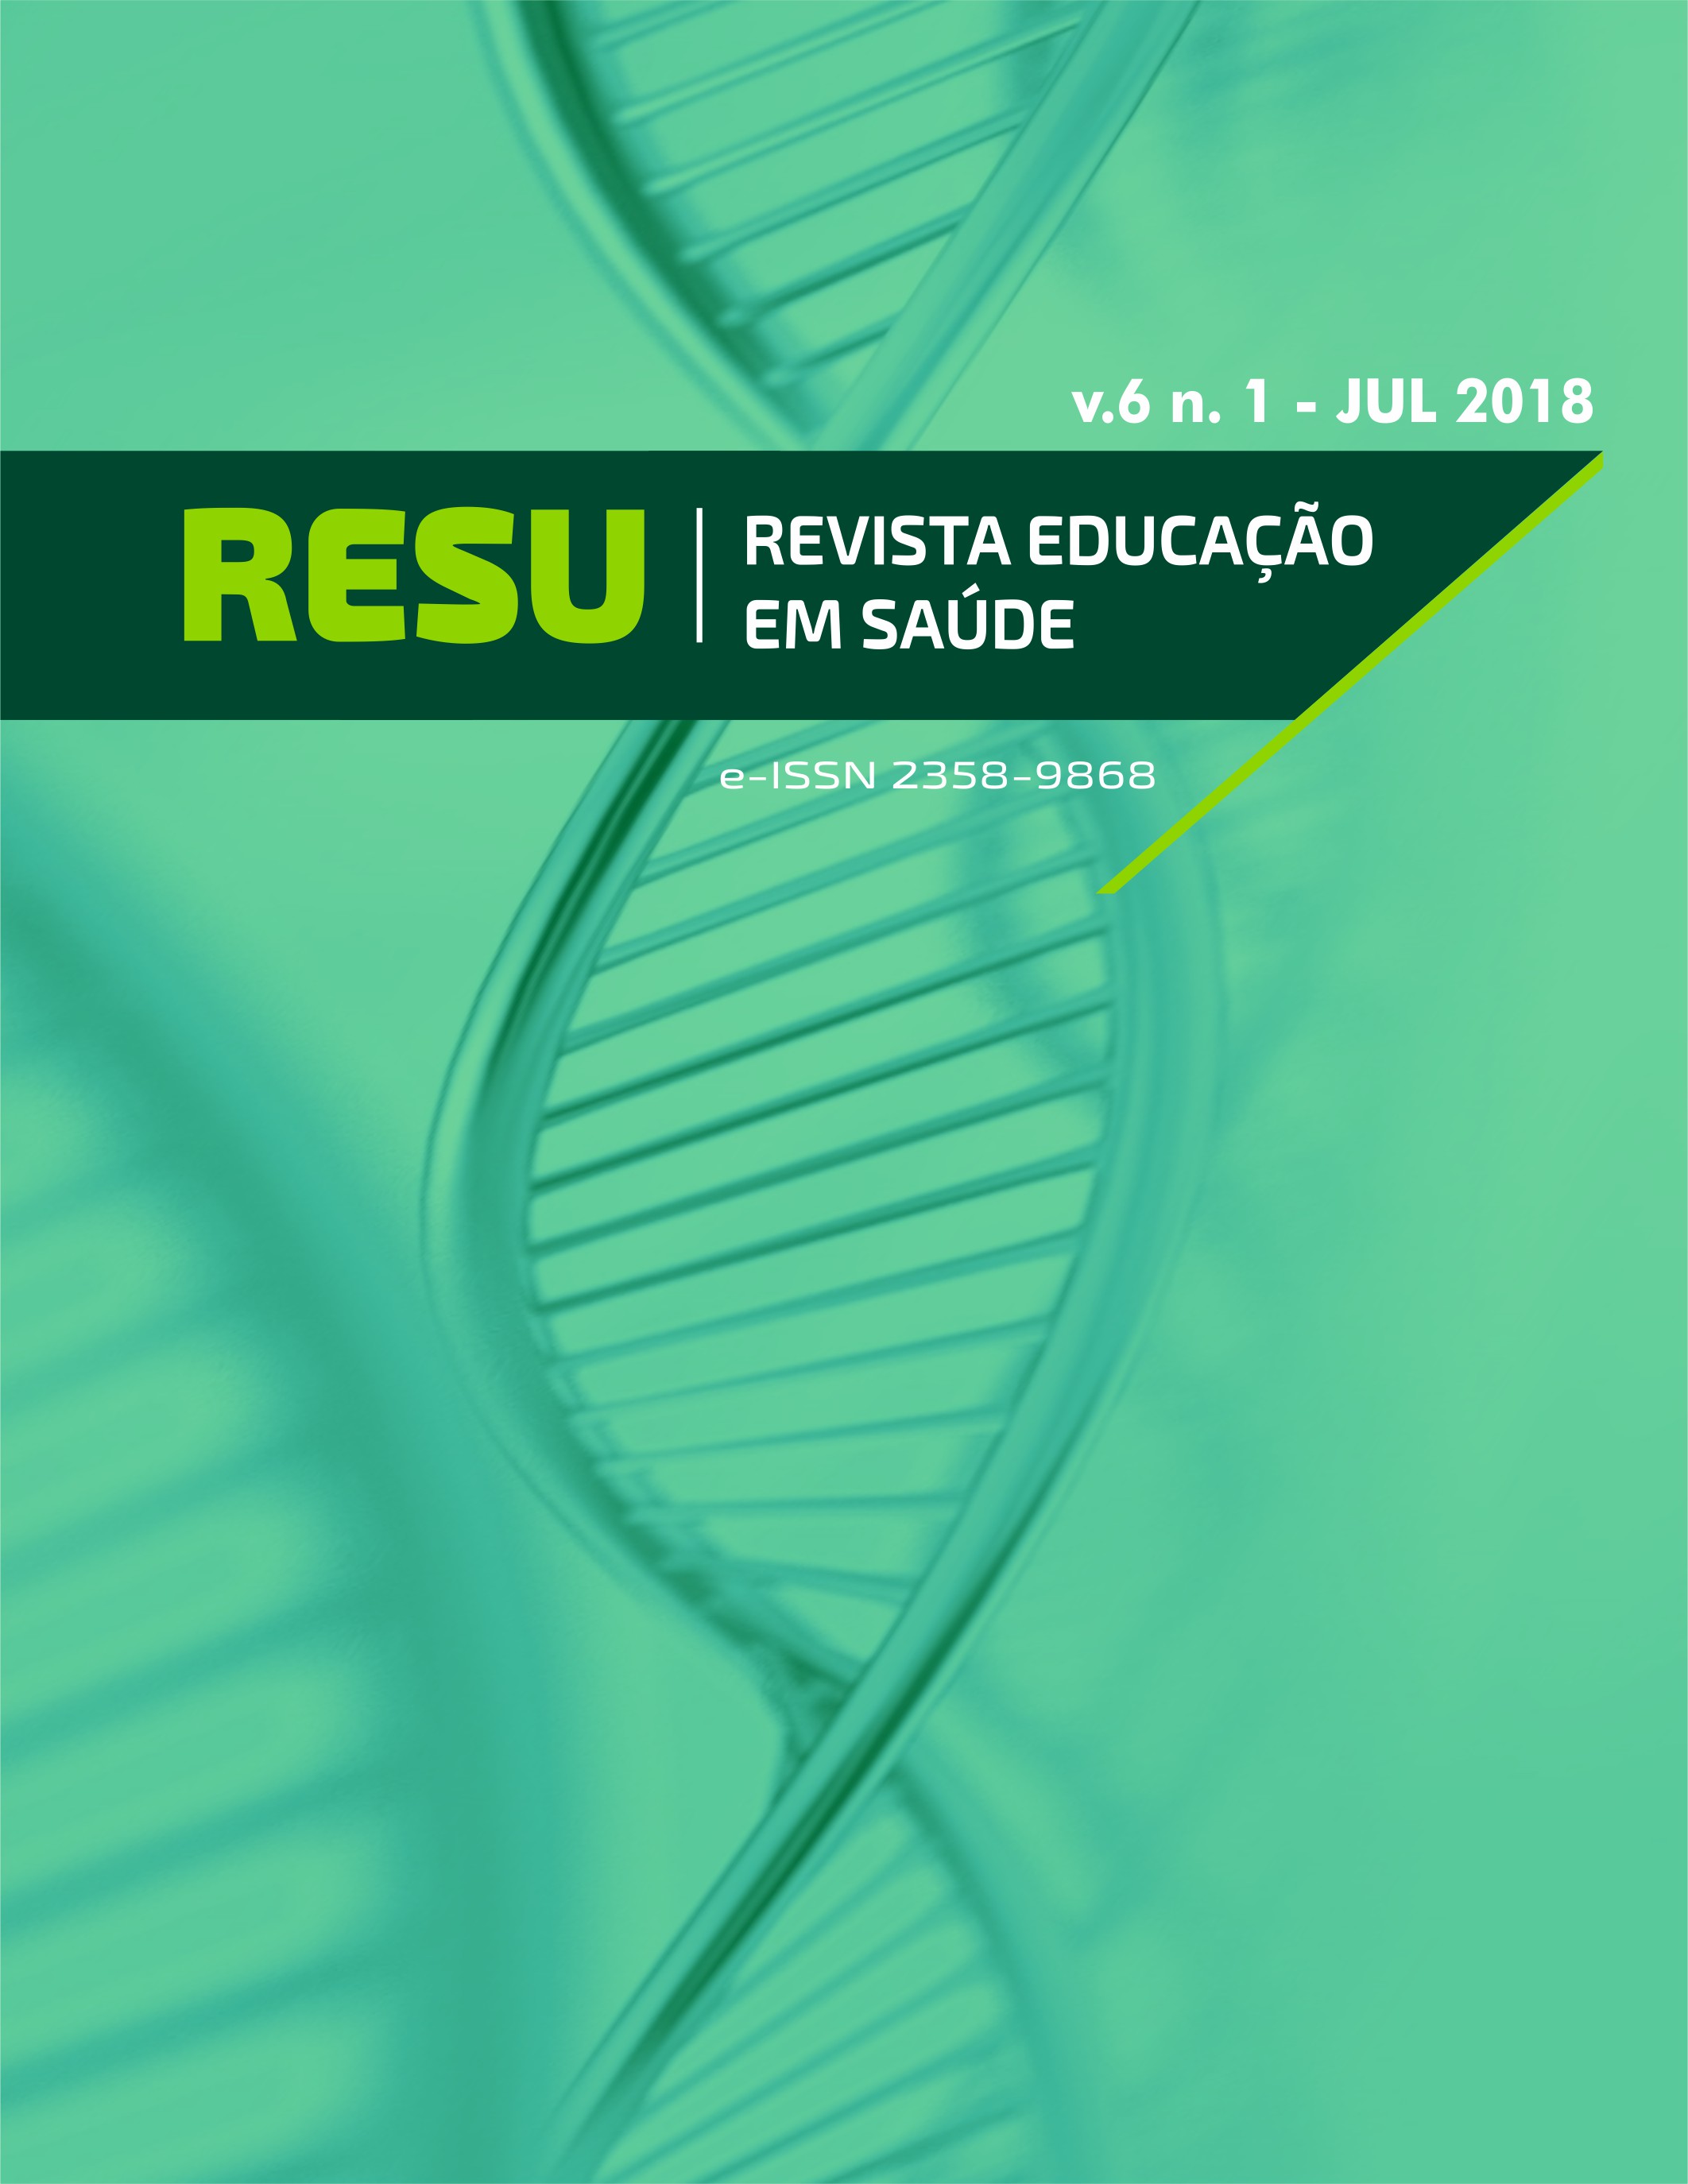 					Visualizar v. 6 n. 1 (2018): RESU - REVISTA EDUCAÇÃO EM SAÚDE
				